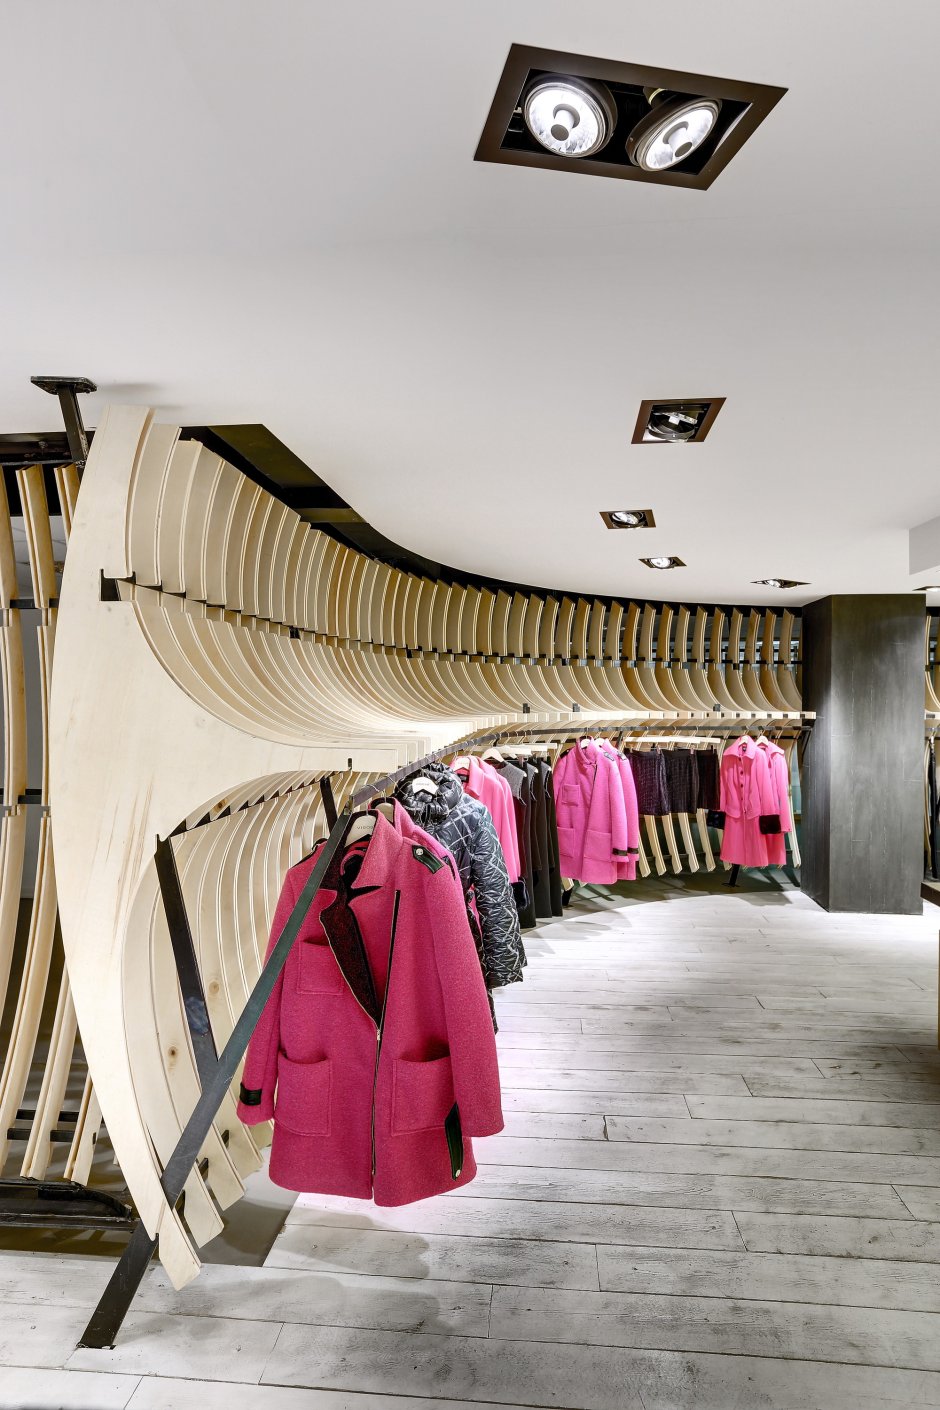 Необычный интерьер магазина одежды